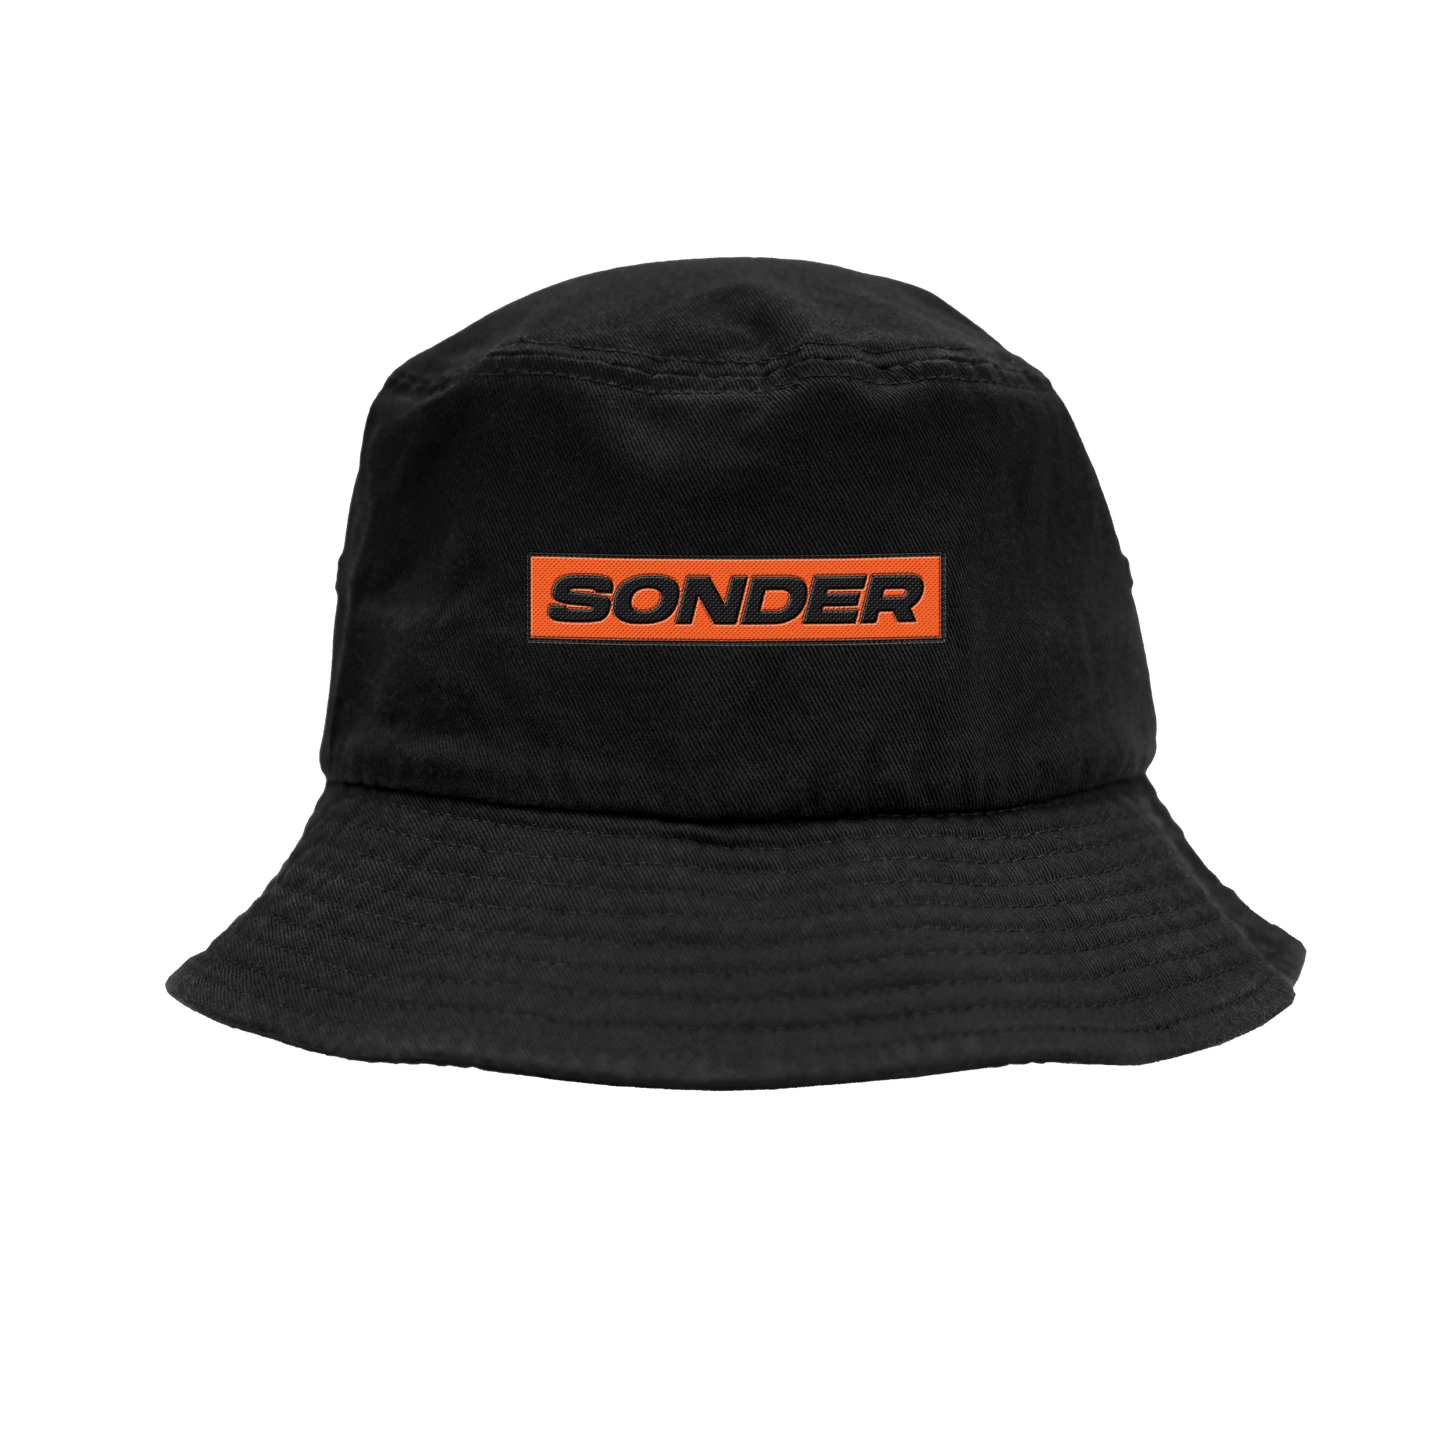 The Wrecks Sonder Bucket Hat - Black